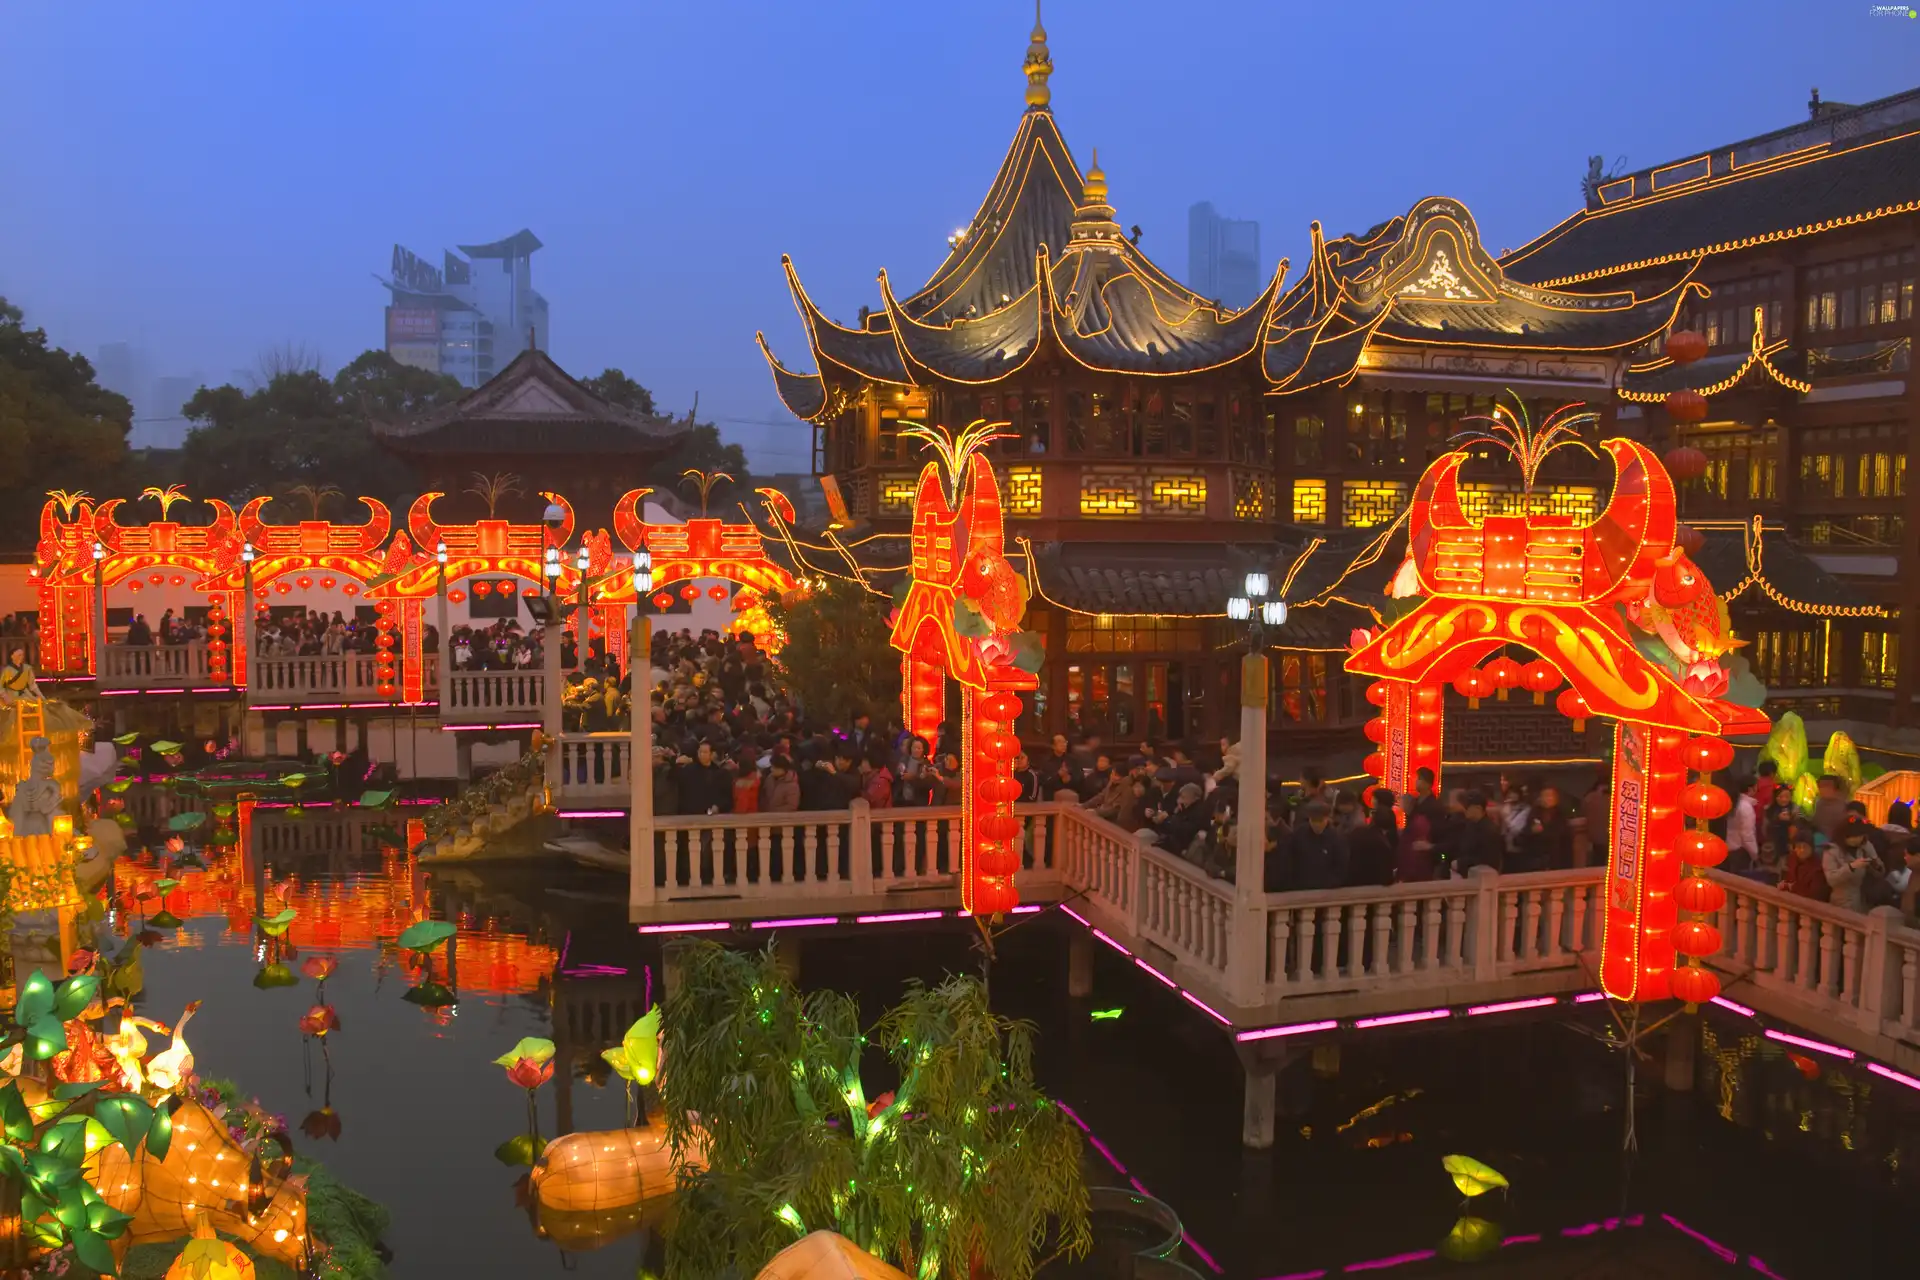 Szanghai, China, Pond - car, lighting, House